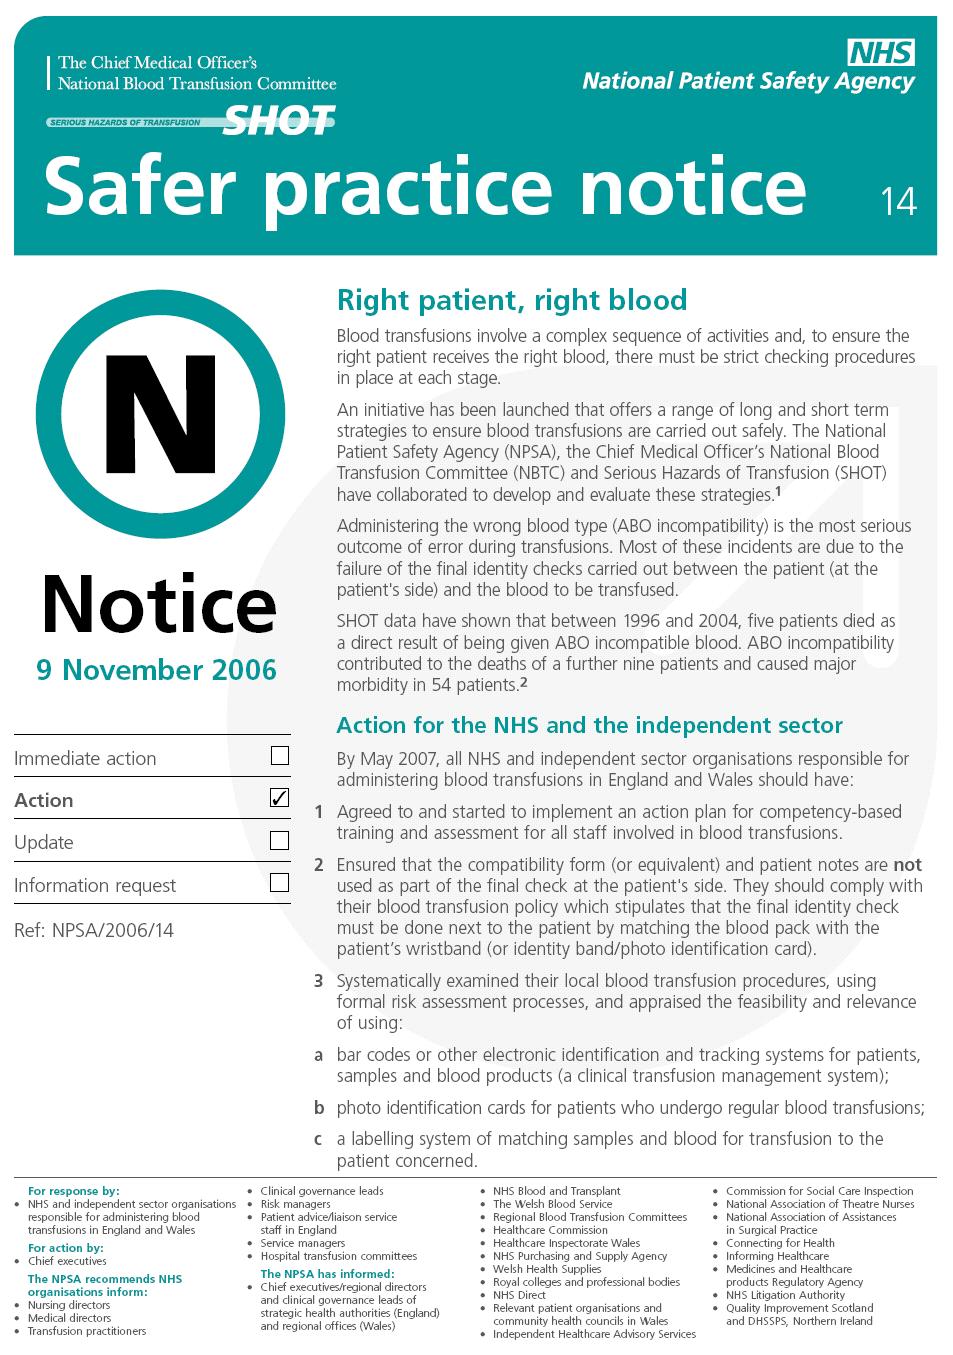 Appendix 4: NPSA Safer Practice